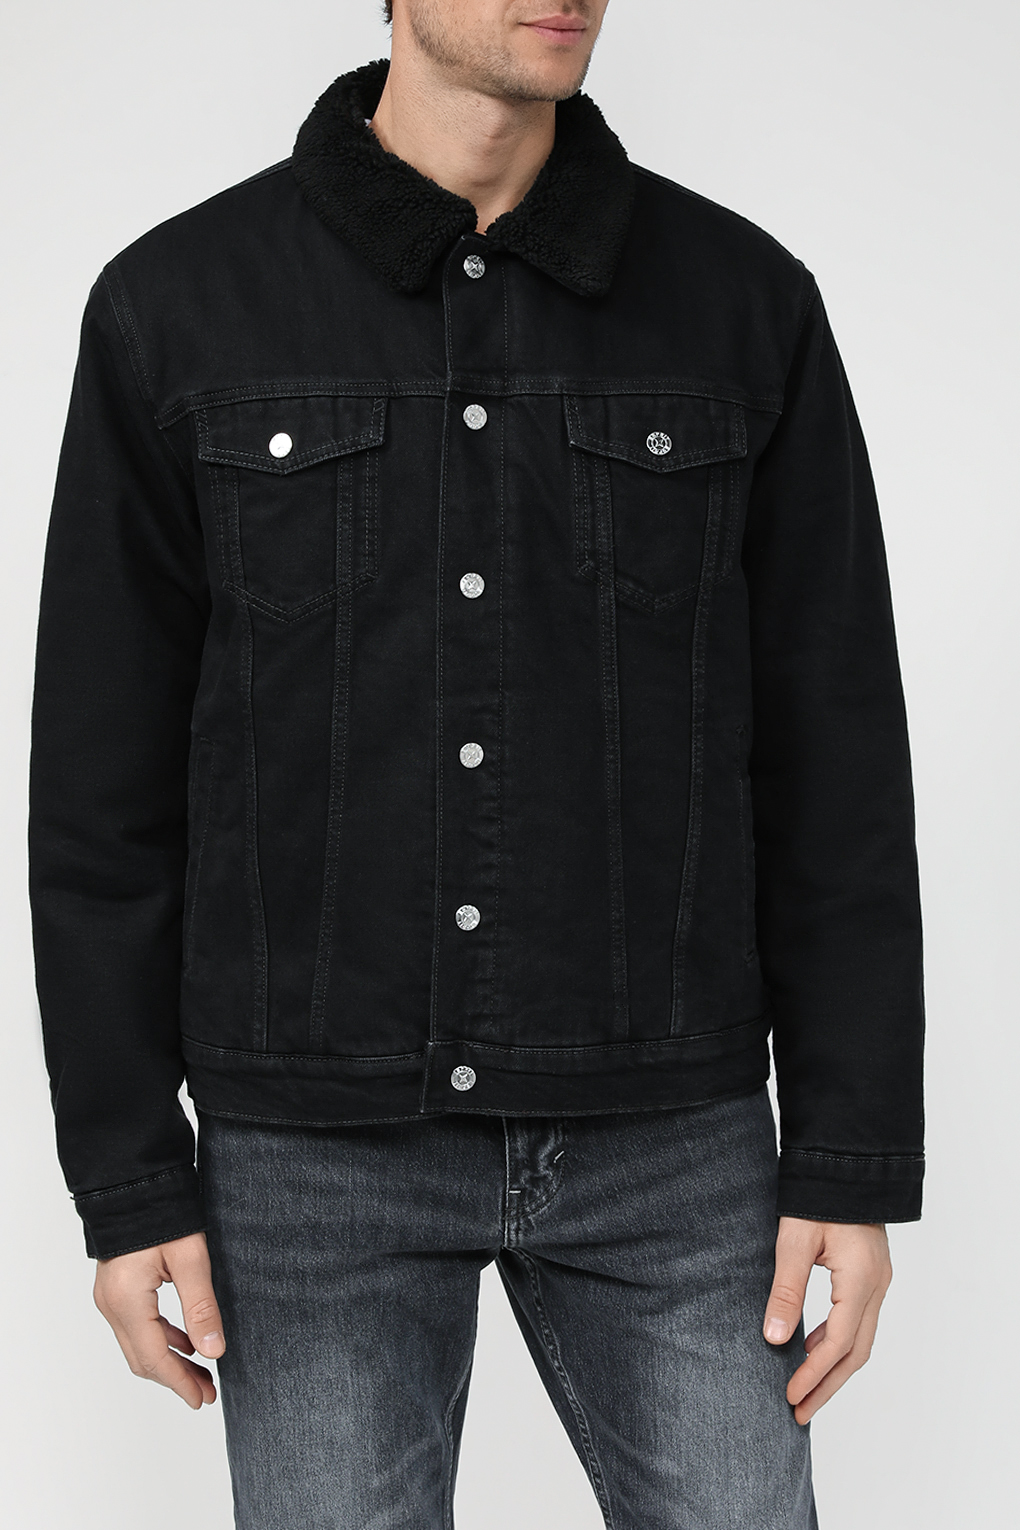 Джинсовая куртка мужская Esprit Casual 103EE2G319 черная M